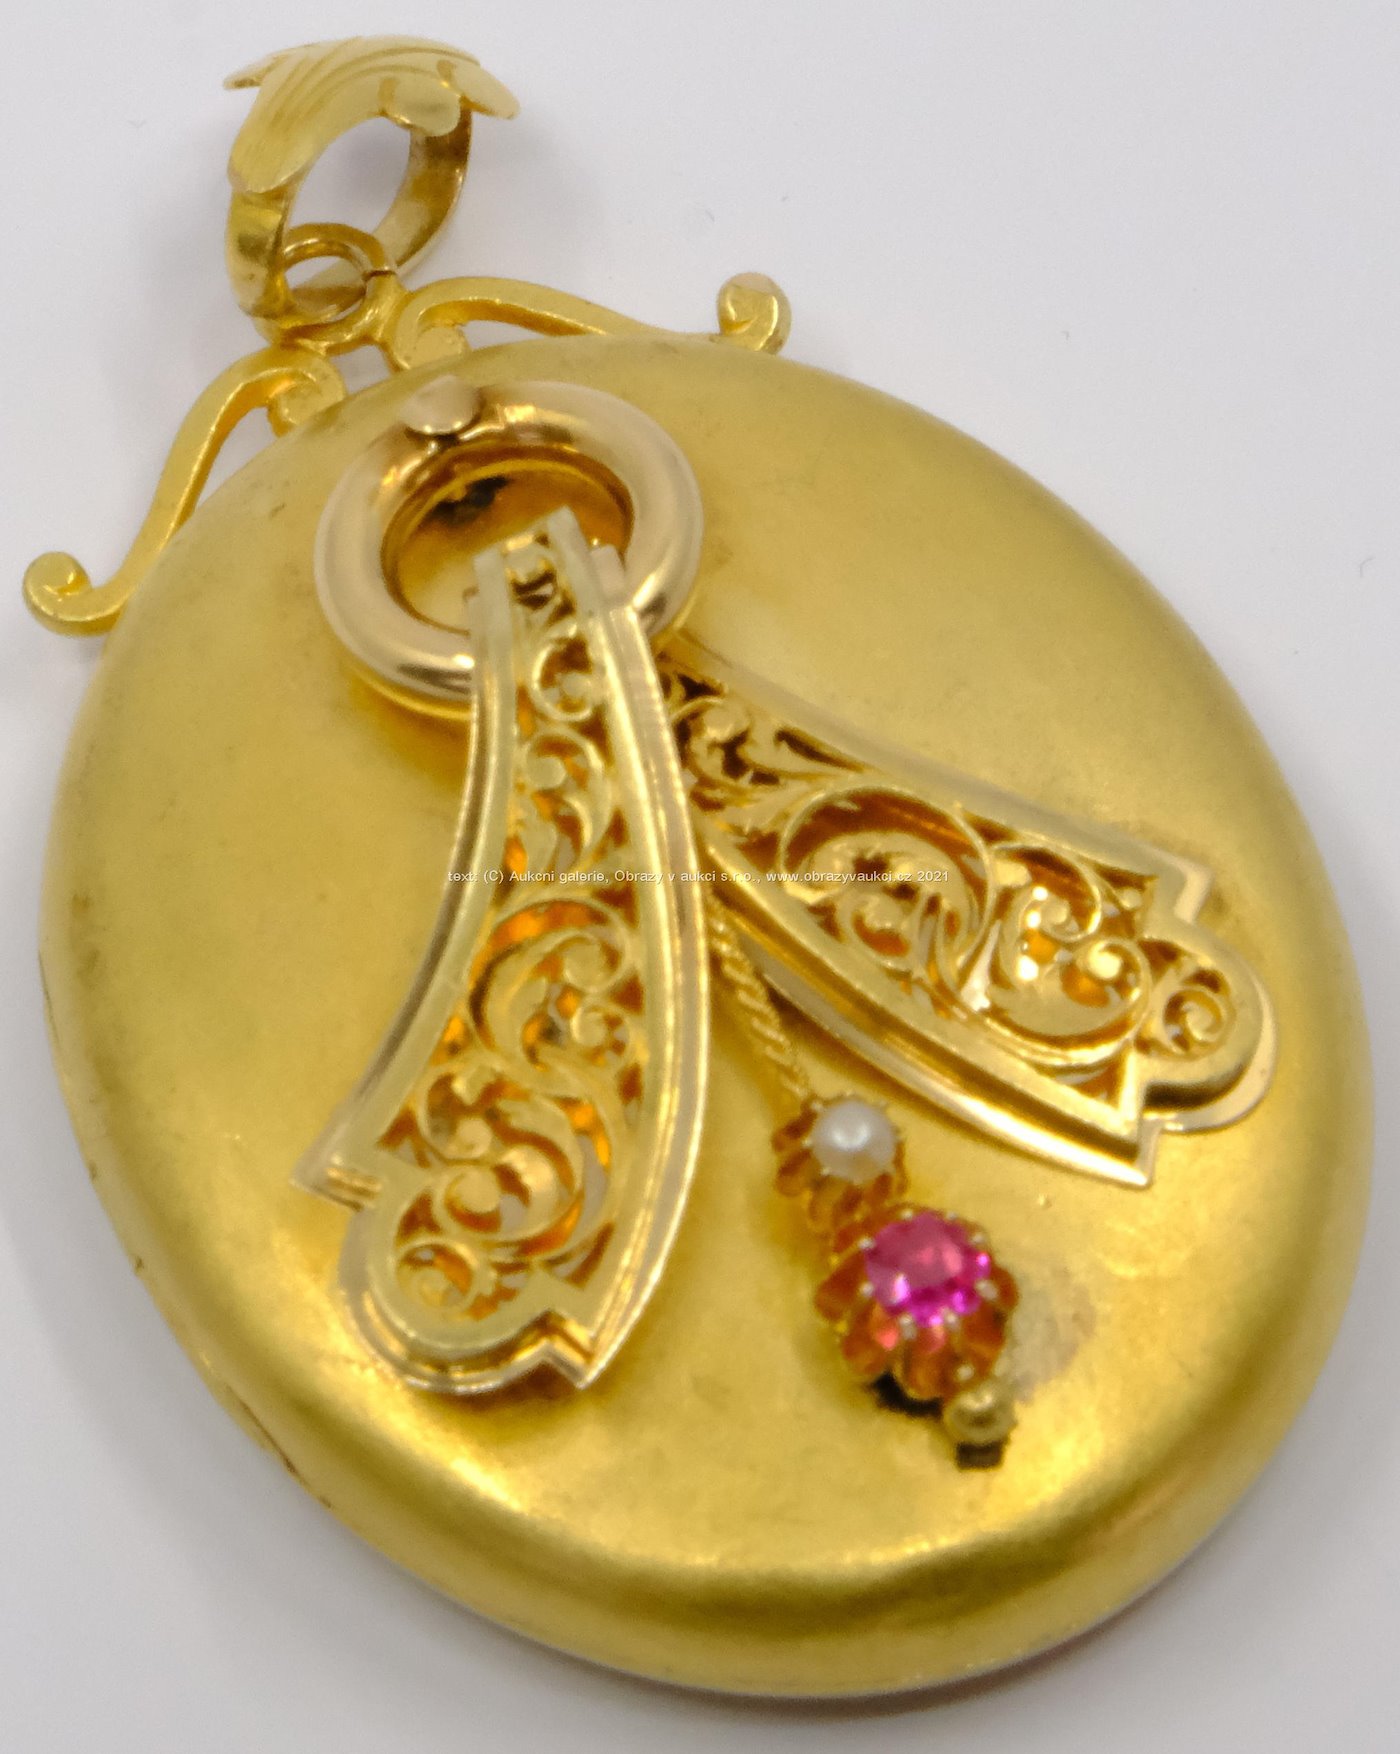 .. - Obrovský antik medailon, zlato 585/1000, hrubá hmotnost 19,60 g